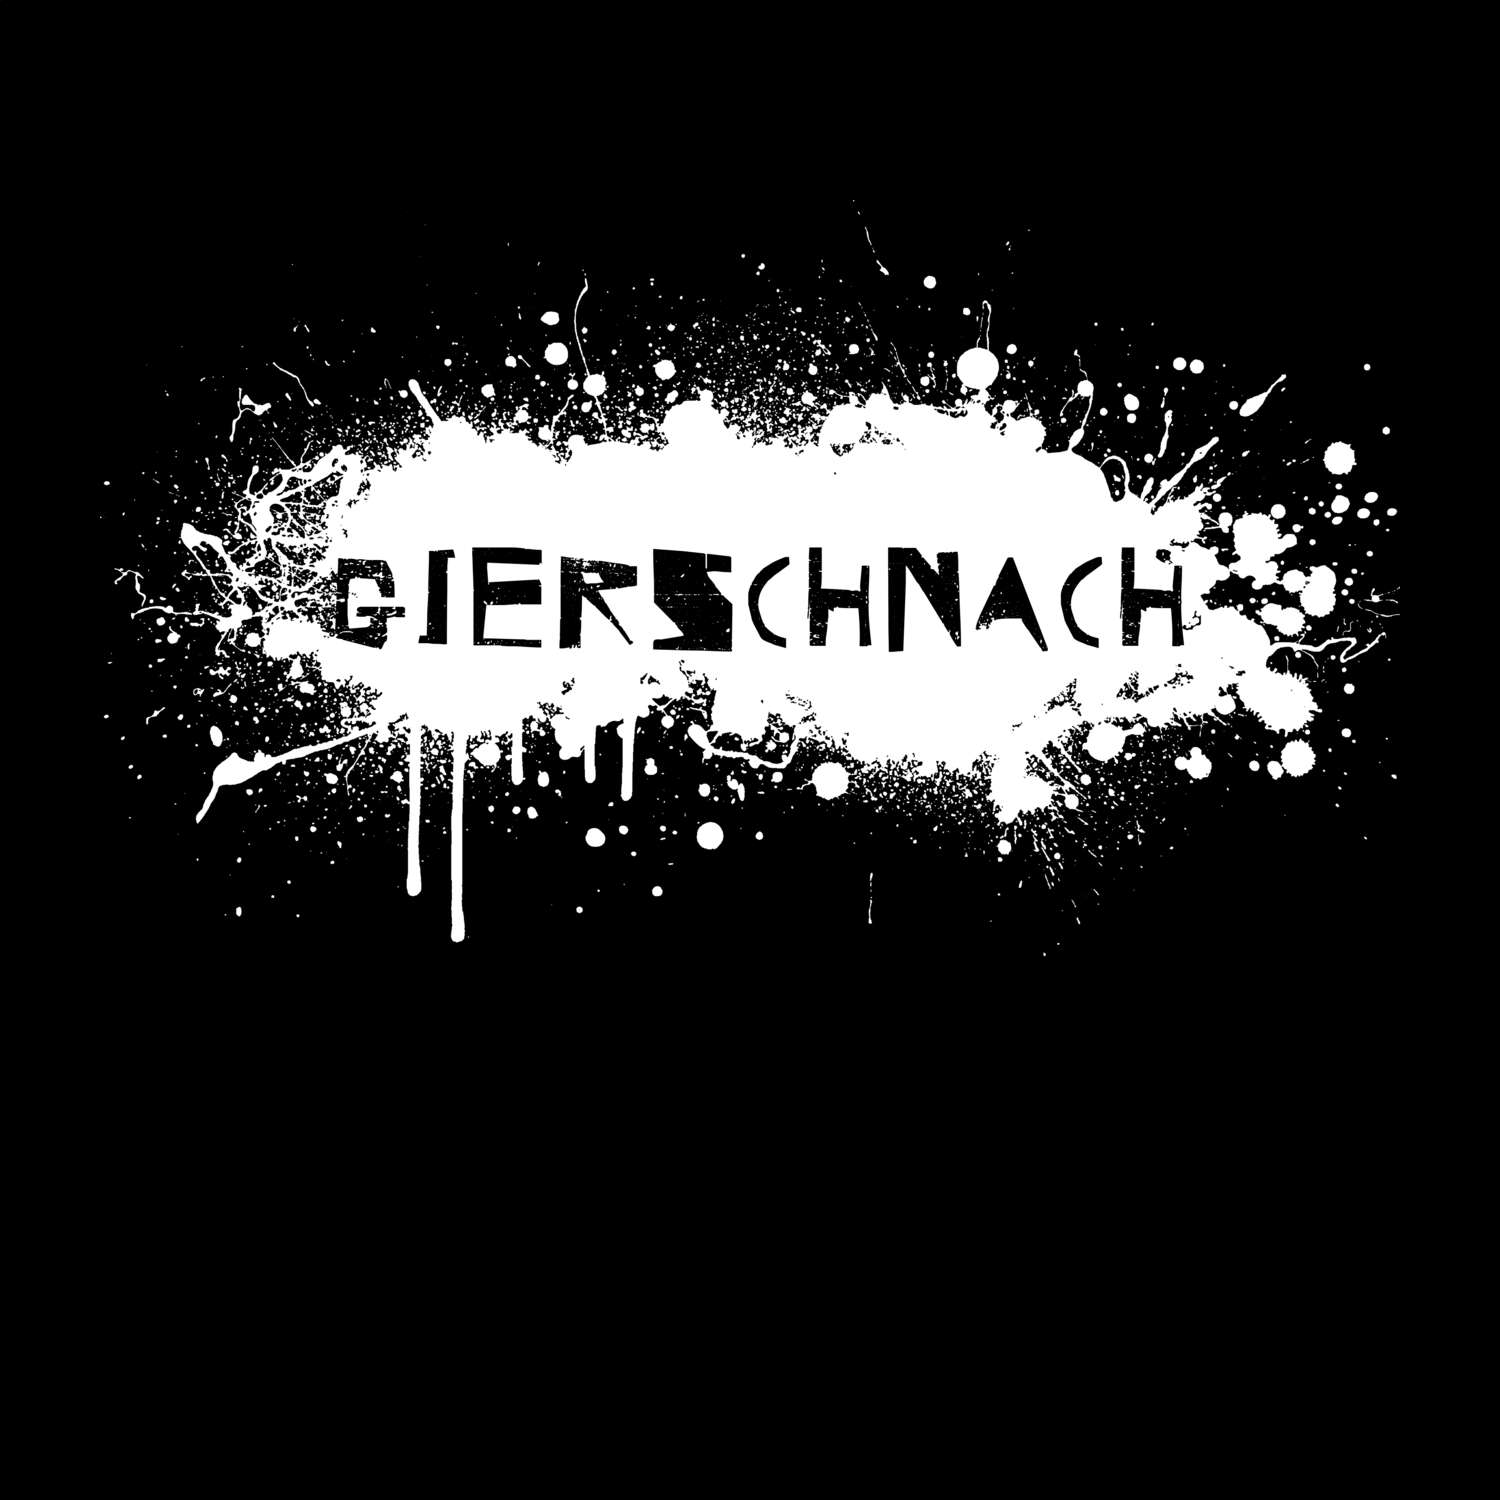 Gierschnach T-Shirt »Paint Splash Punk«